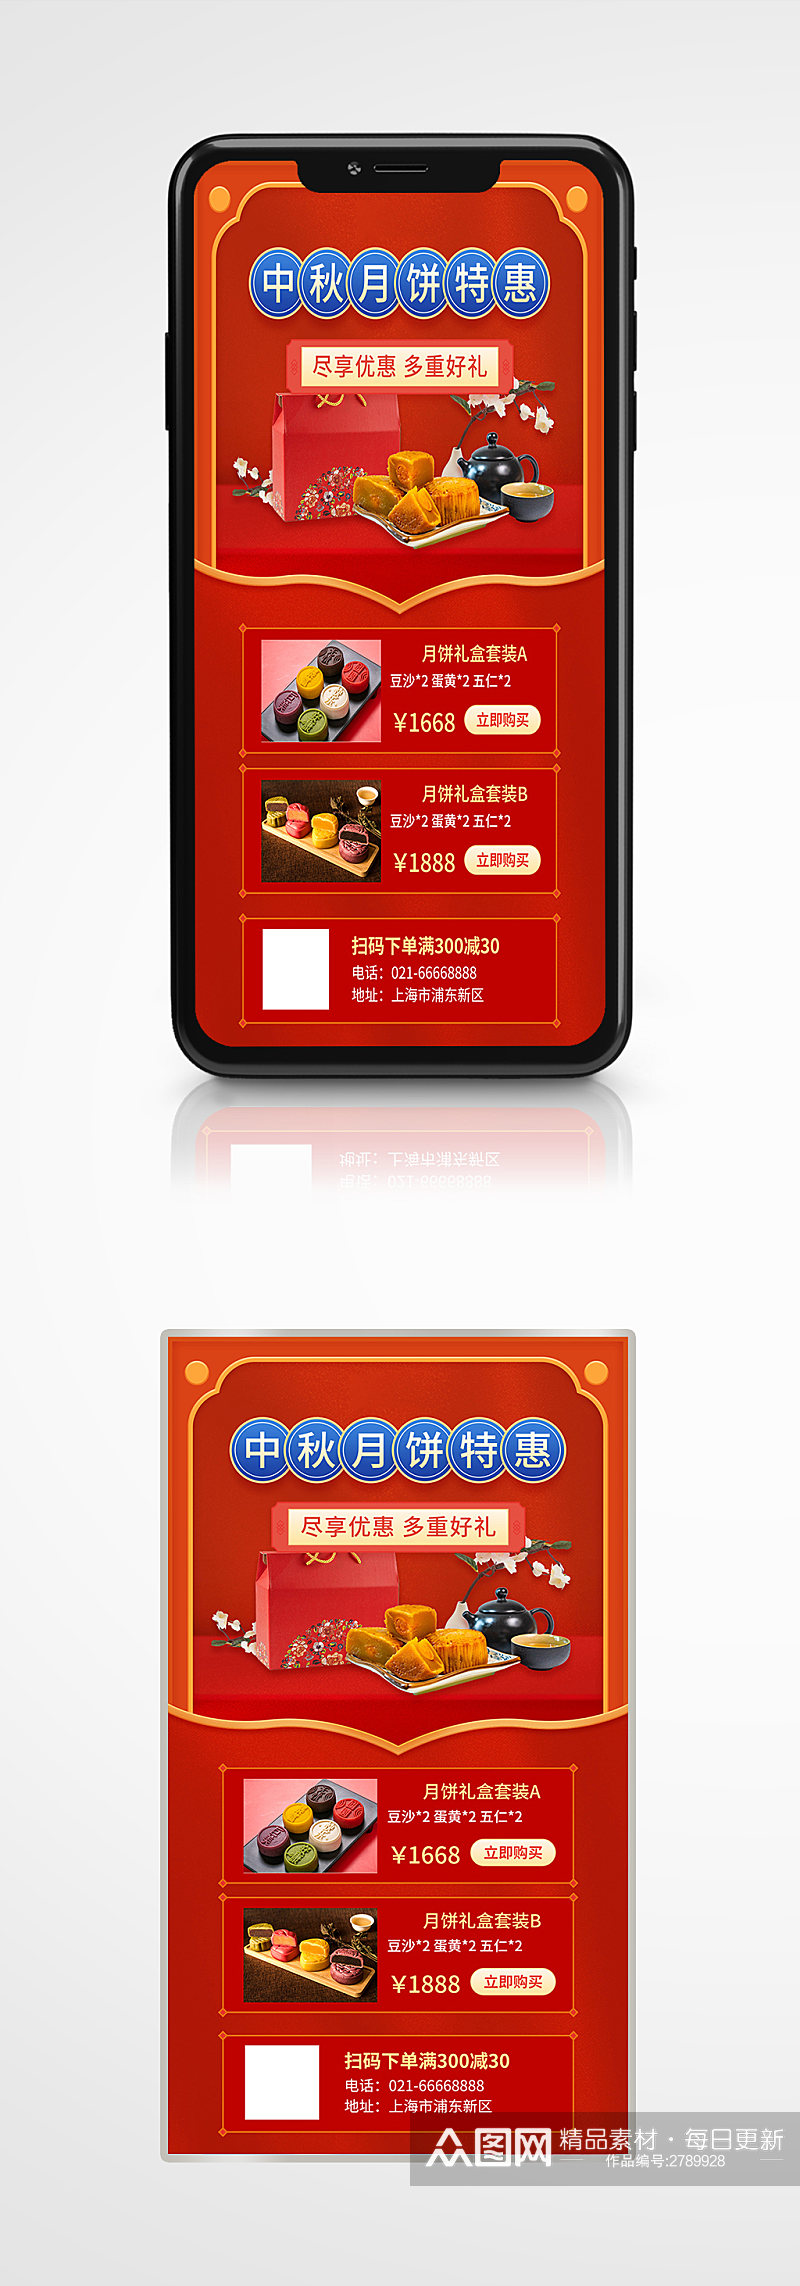 中秋节产品展示活动促销红色中国风手机海报素材